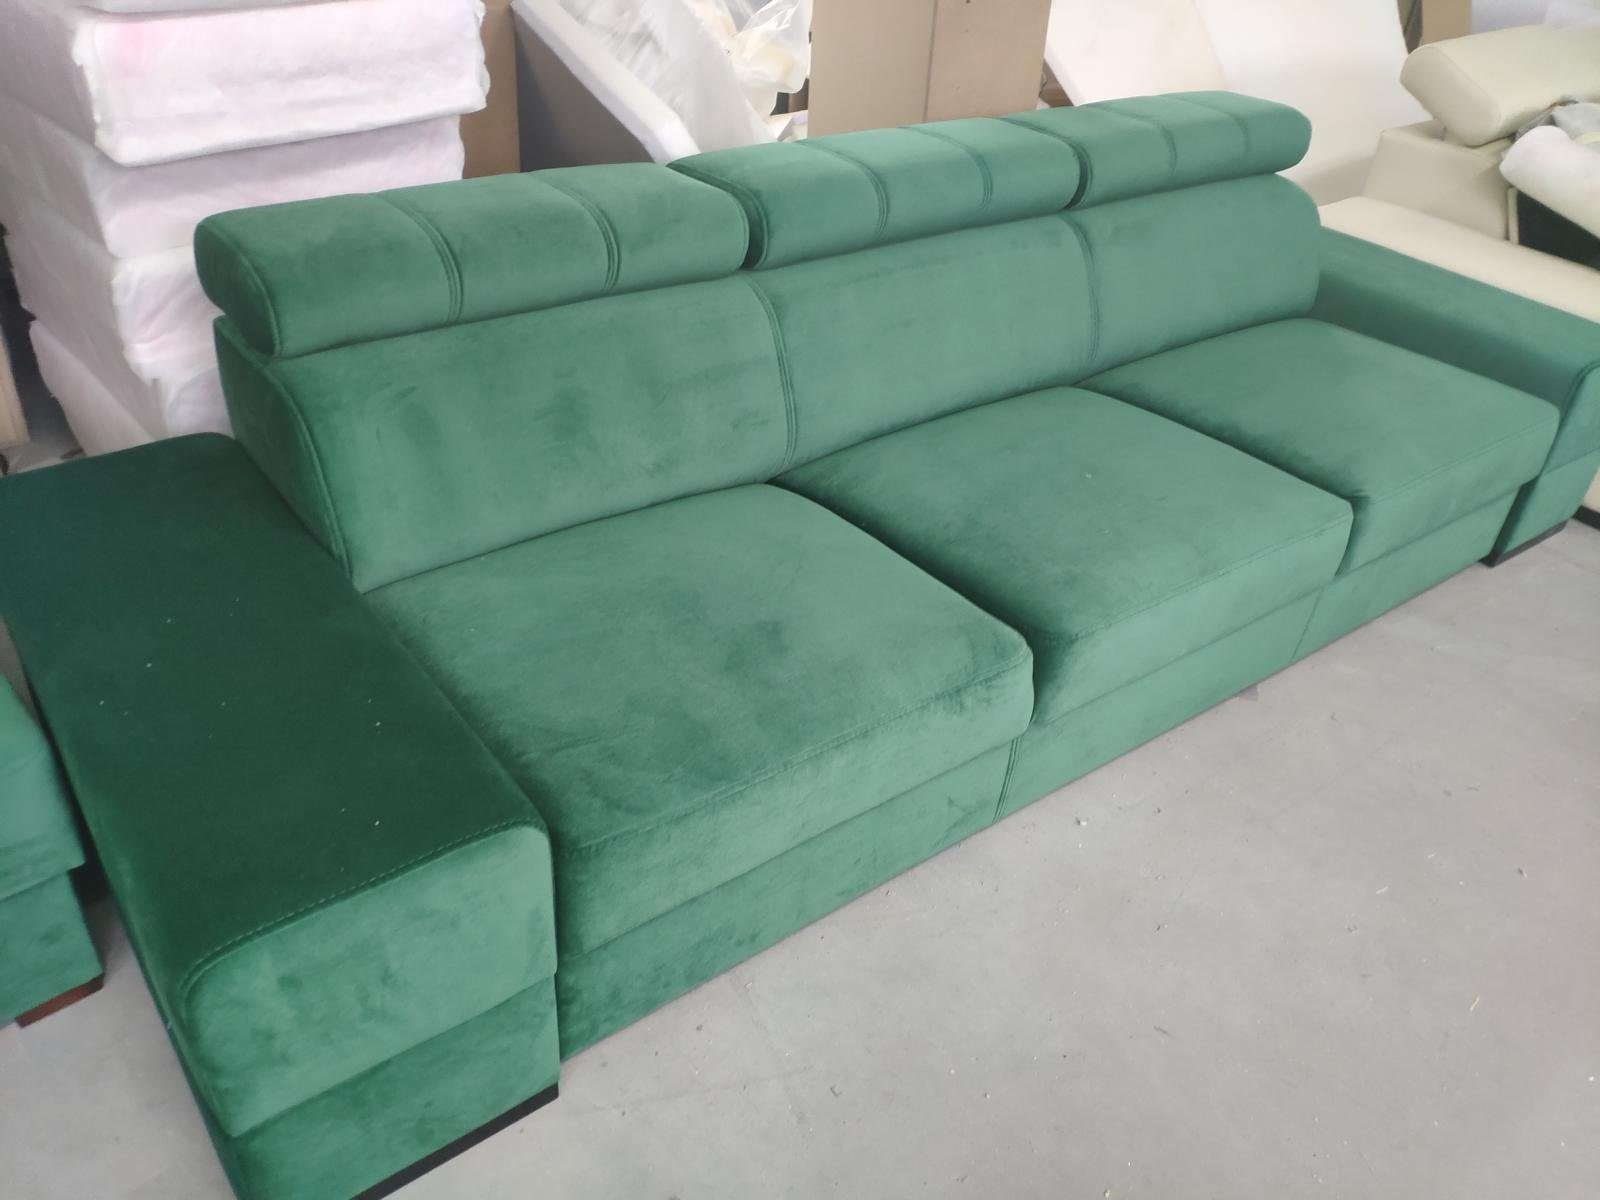 JVmoebel Sofa 4 Couch in Sofa Polster, - Leder Design xxl Grün Sitzer Europe Couchen Made